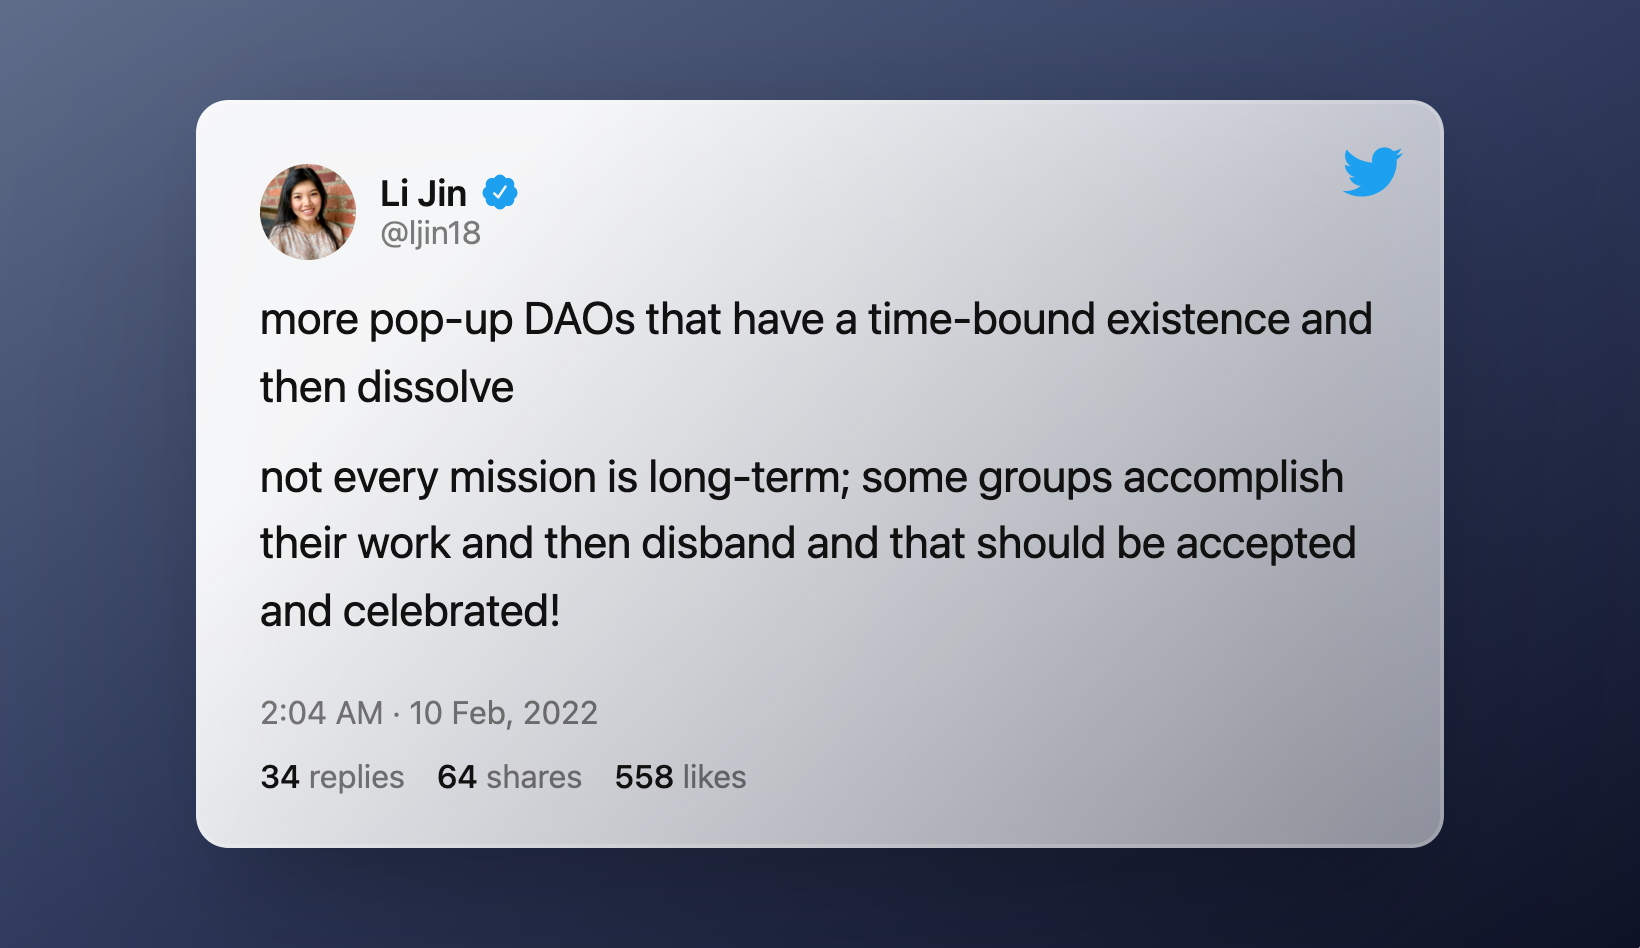 Tweet by Li Jin about dissolving DAOs